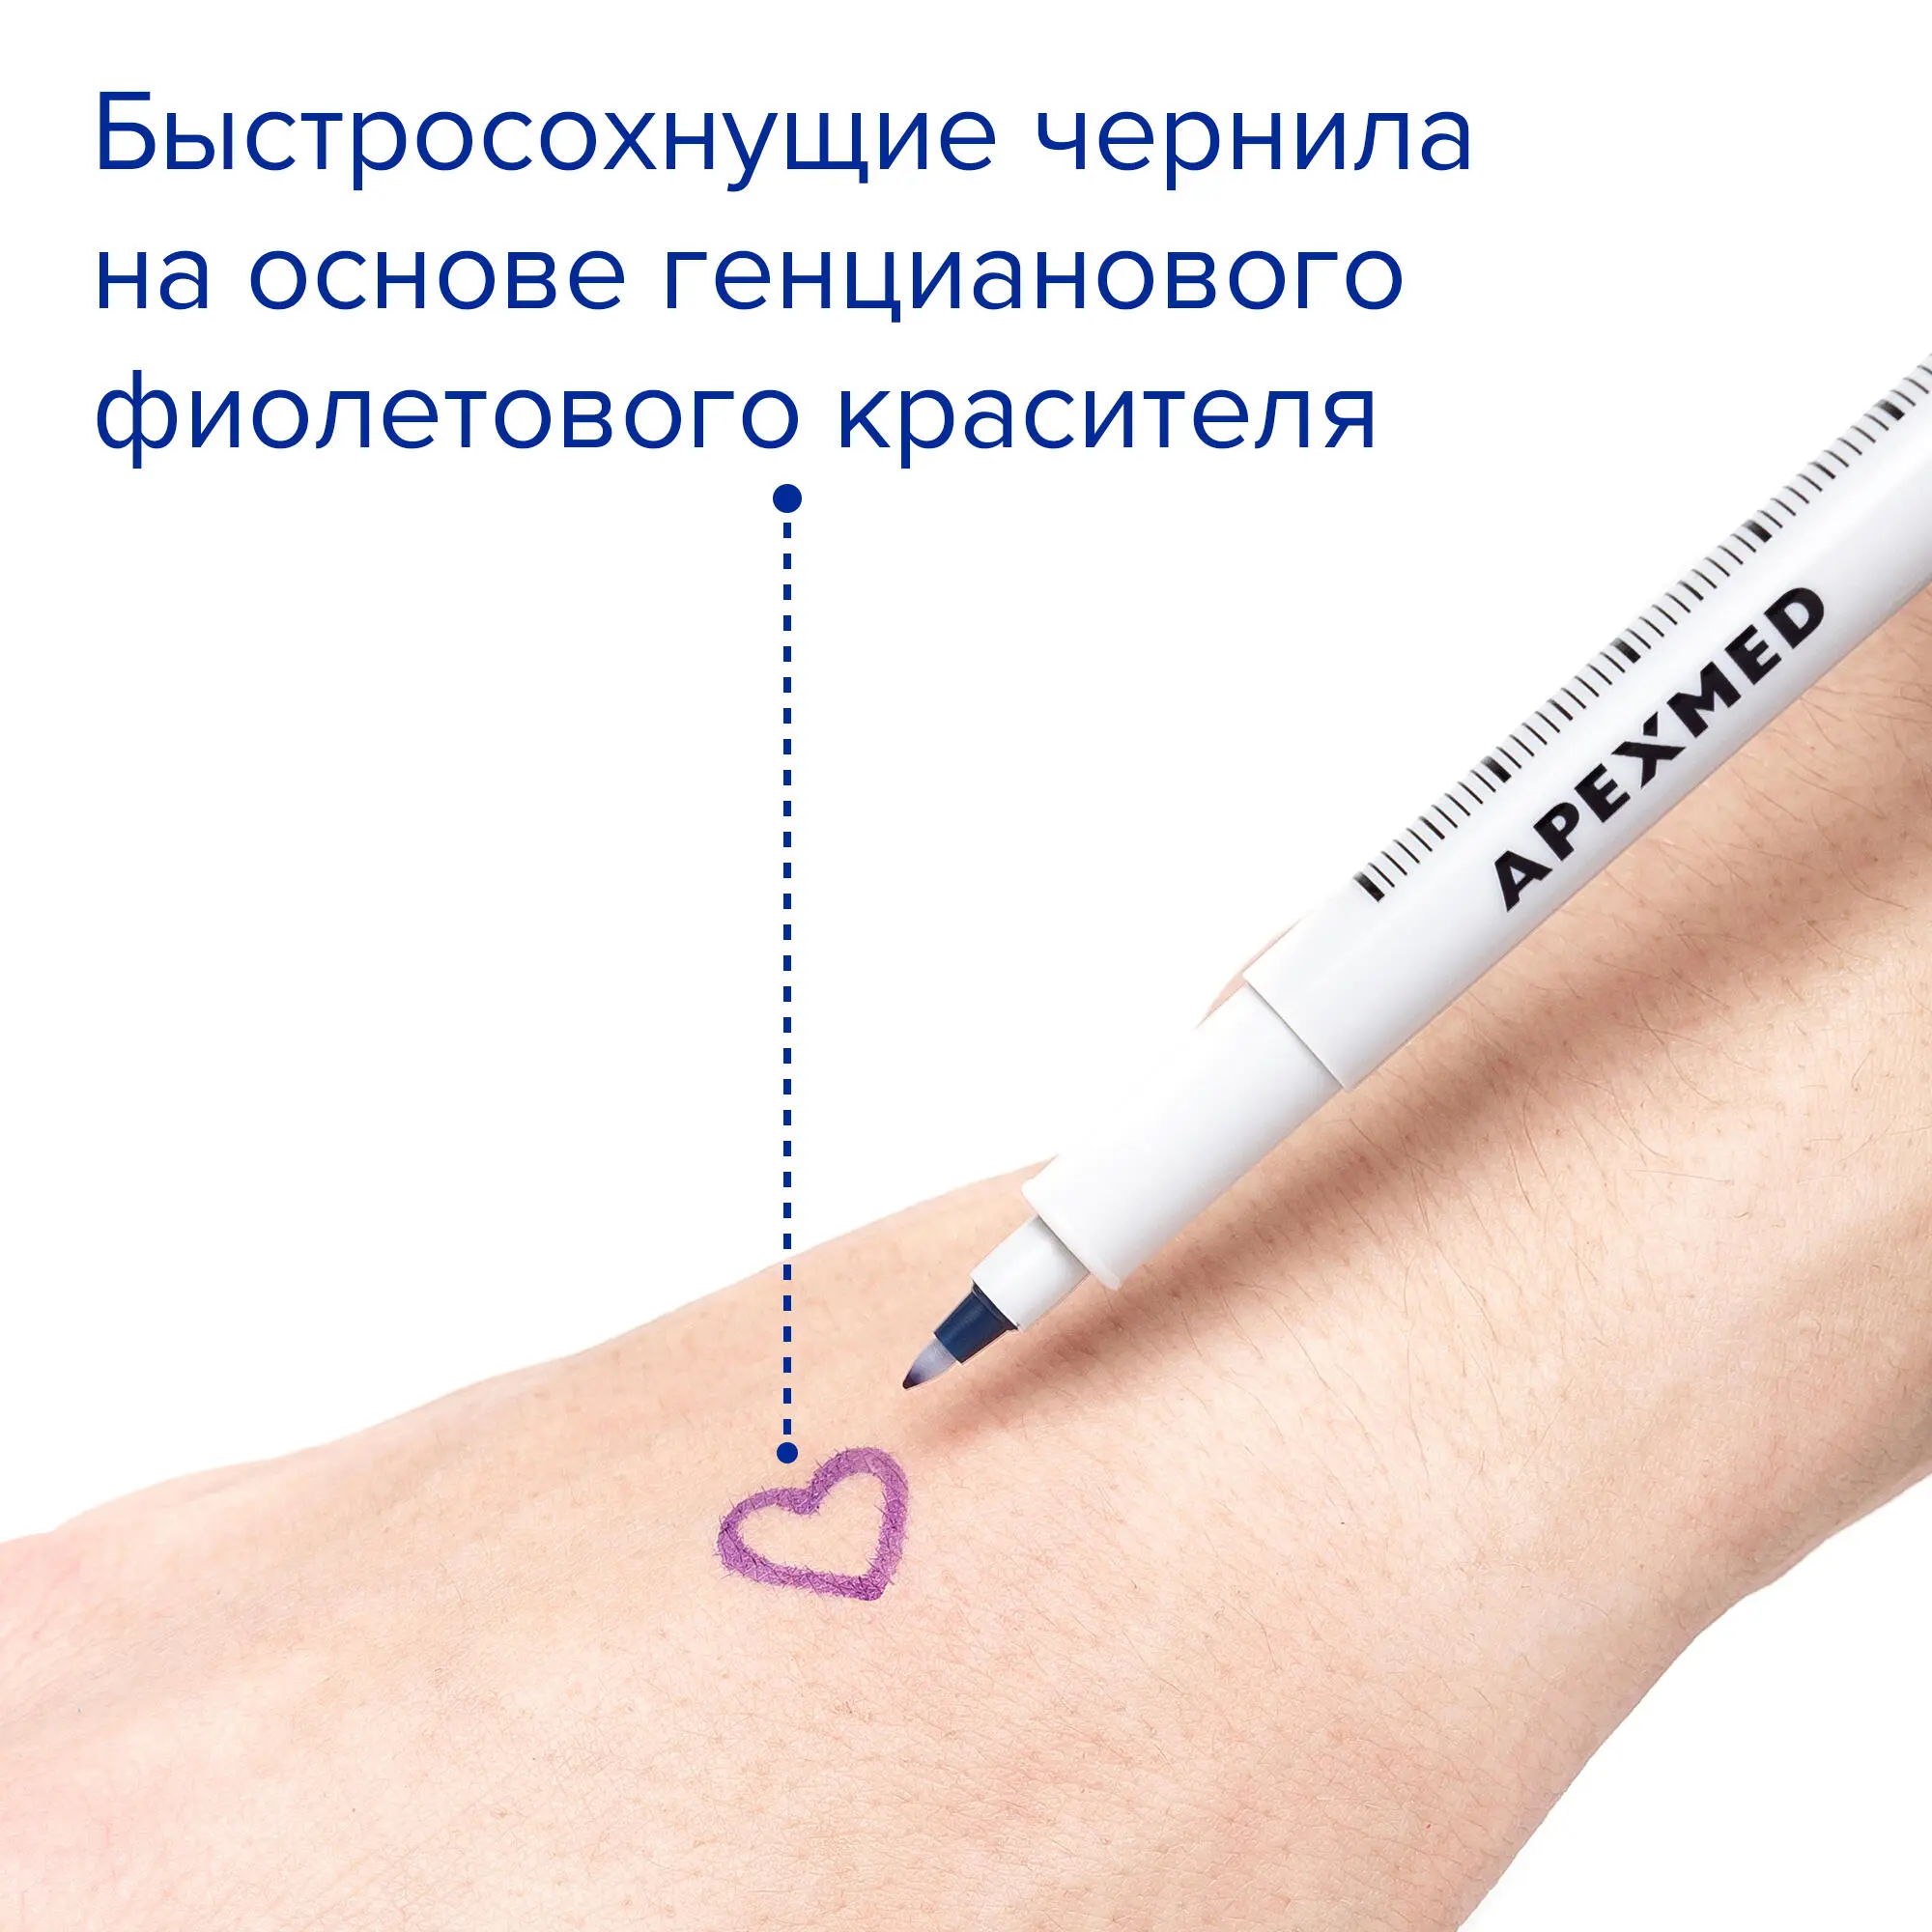 Медицинский маркер для кожи с тонким стержнем, 3 шт, Apexmed